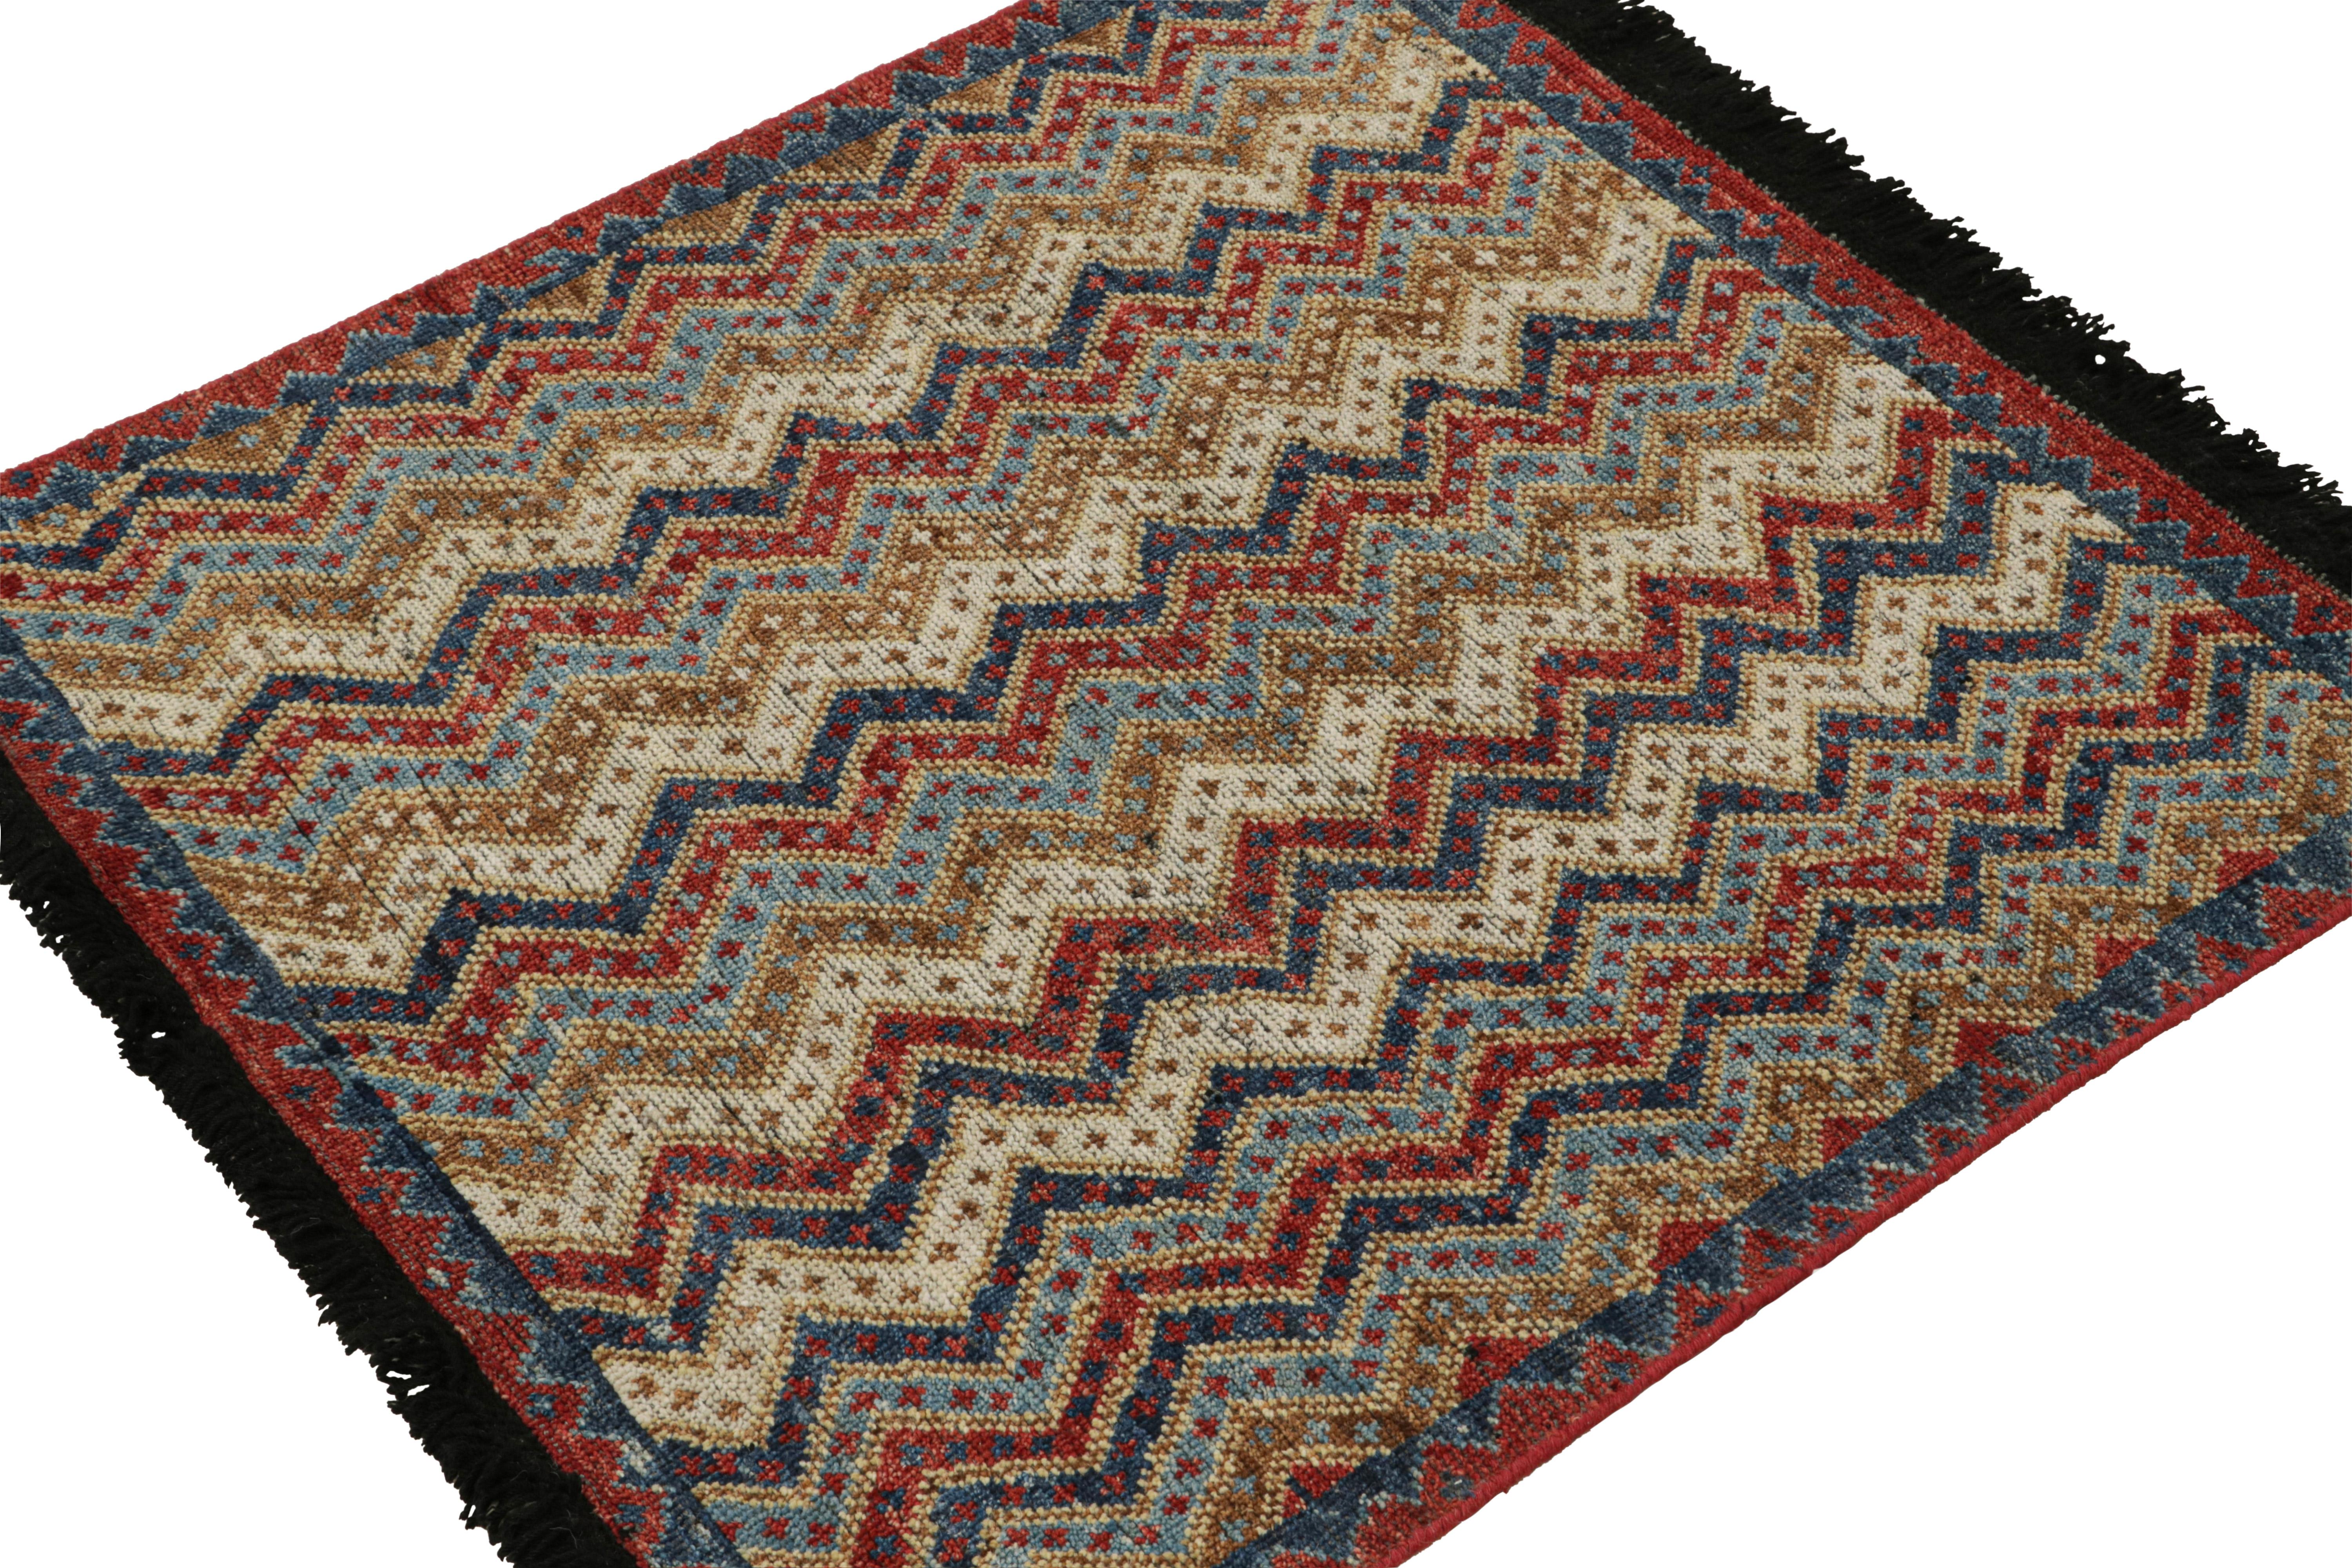 Dieser Teppich 3x3 ist ein großartiger Neuzugang in der klassischen Burano-Kollektion von Rug & Kilim. Handgeknüpft aus Wolle.

Über das Design: 

Dieser Teppich ist von antiken Stammesteppichen inspiriert und zeigt Chevrons mit feinen geometrischen